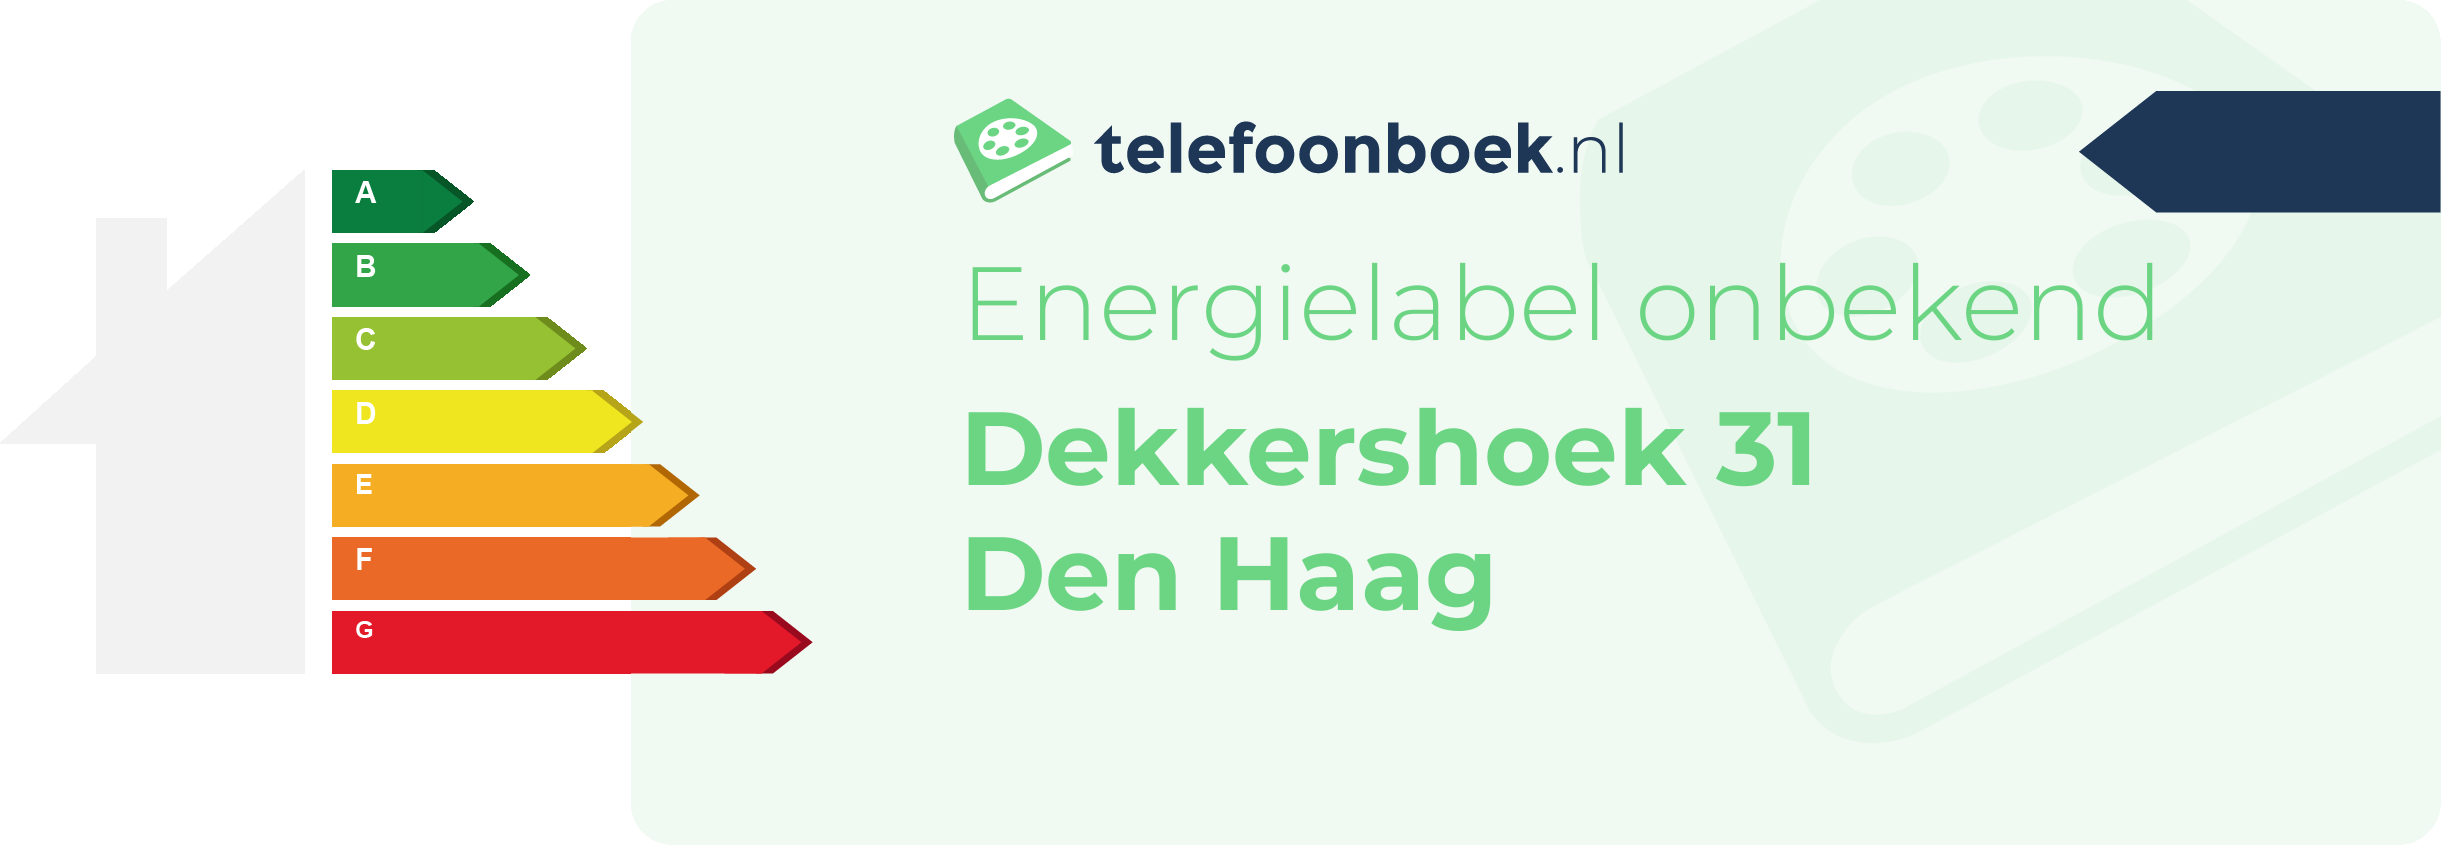 Energielabel Dekkershoek 31 Den Haag